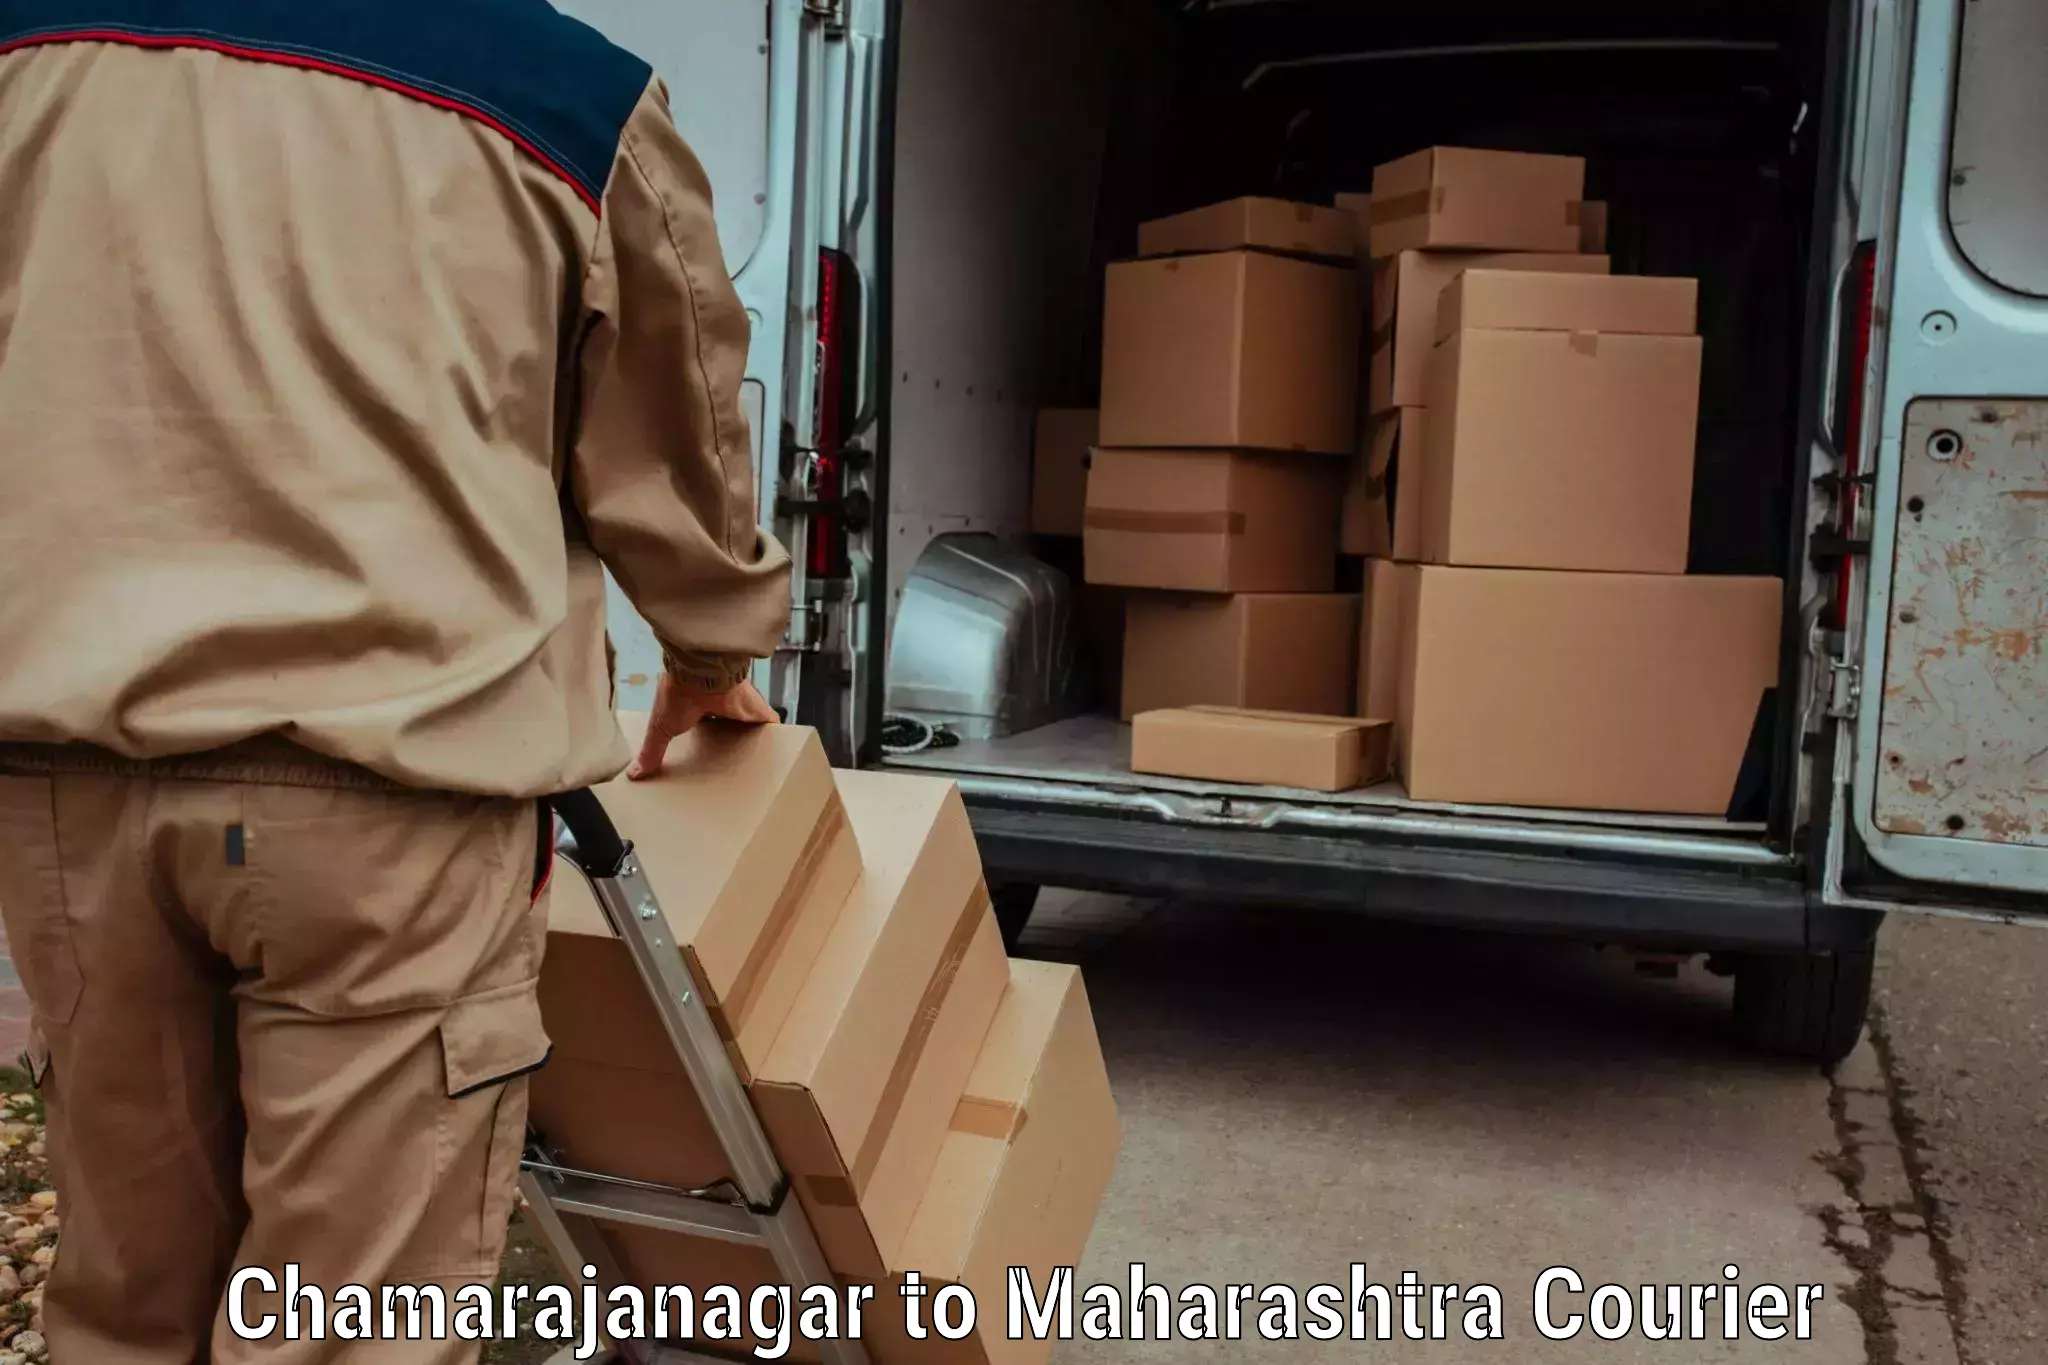 Easy return solutions Chamarajanagar to Navi Mumbai